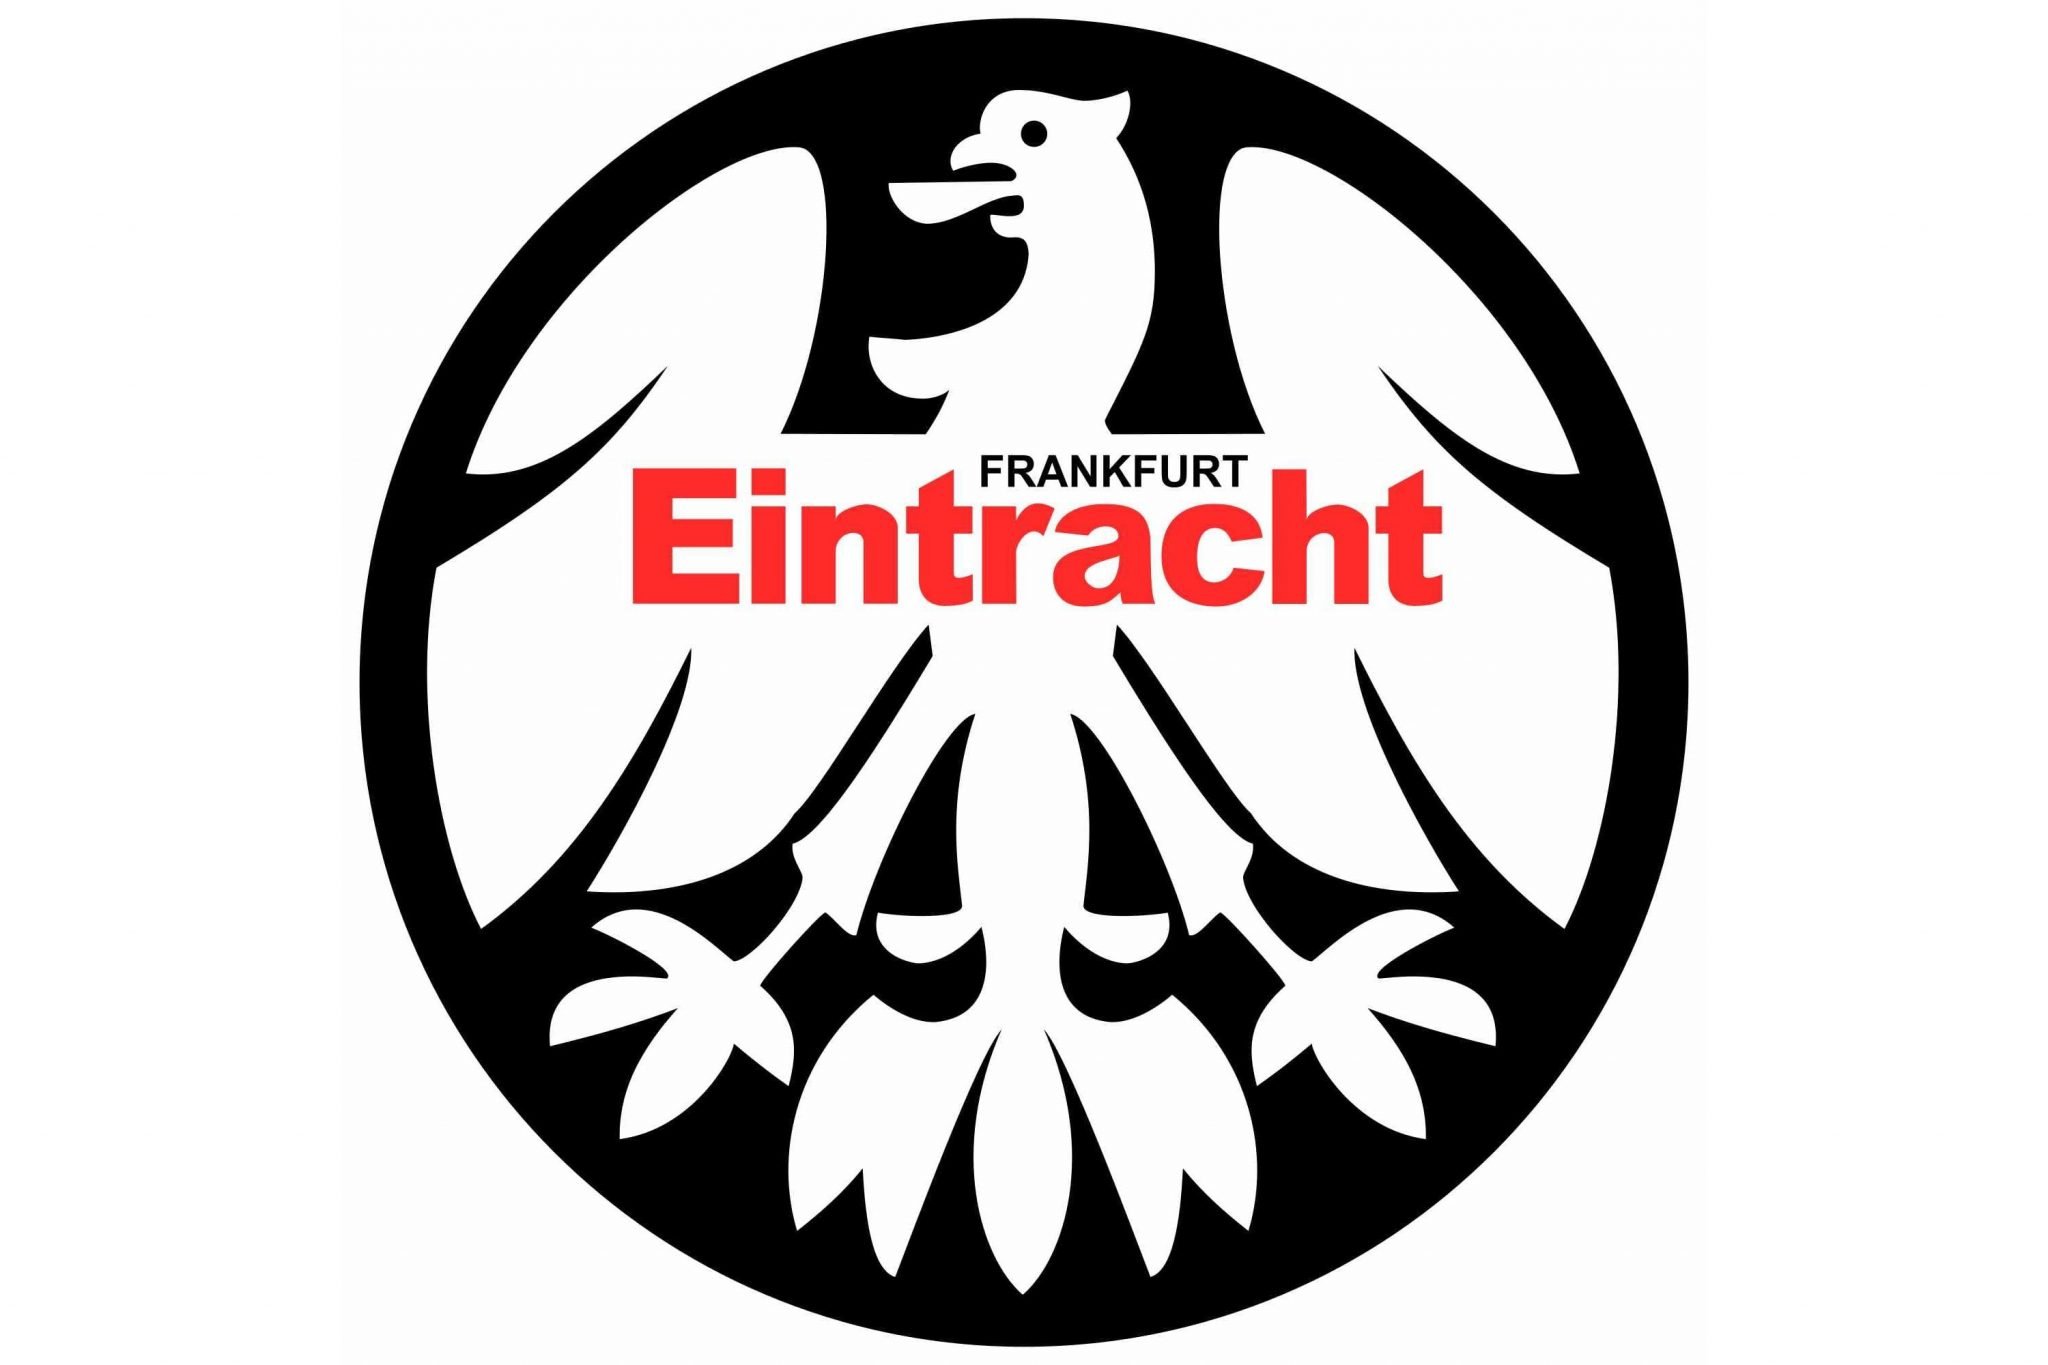 Sge Eintracht Frankfurt